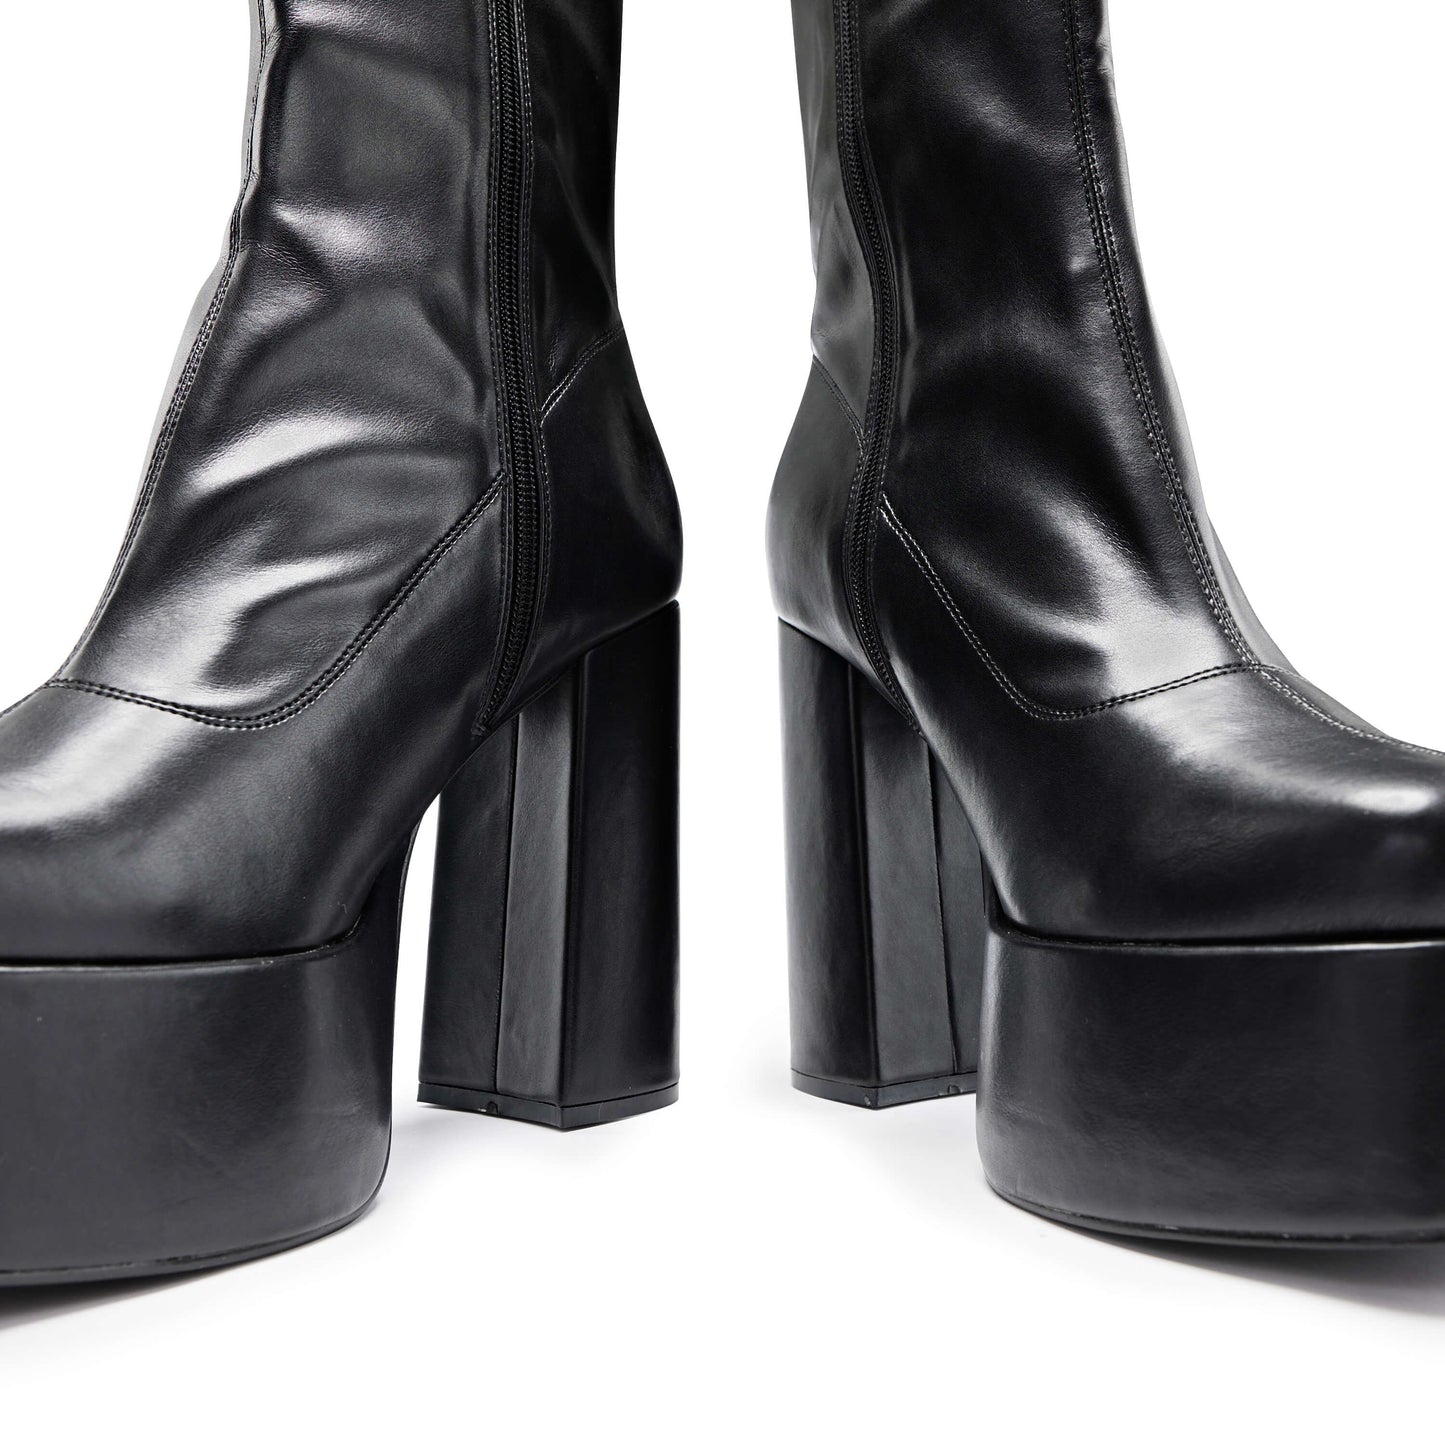 Delano Men's Black Platform Heeled Boots - Ankle Boots - KOI Footwear - Black - Front Detail